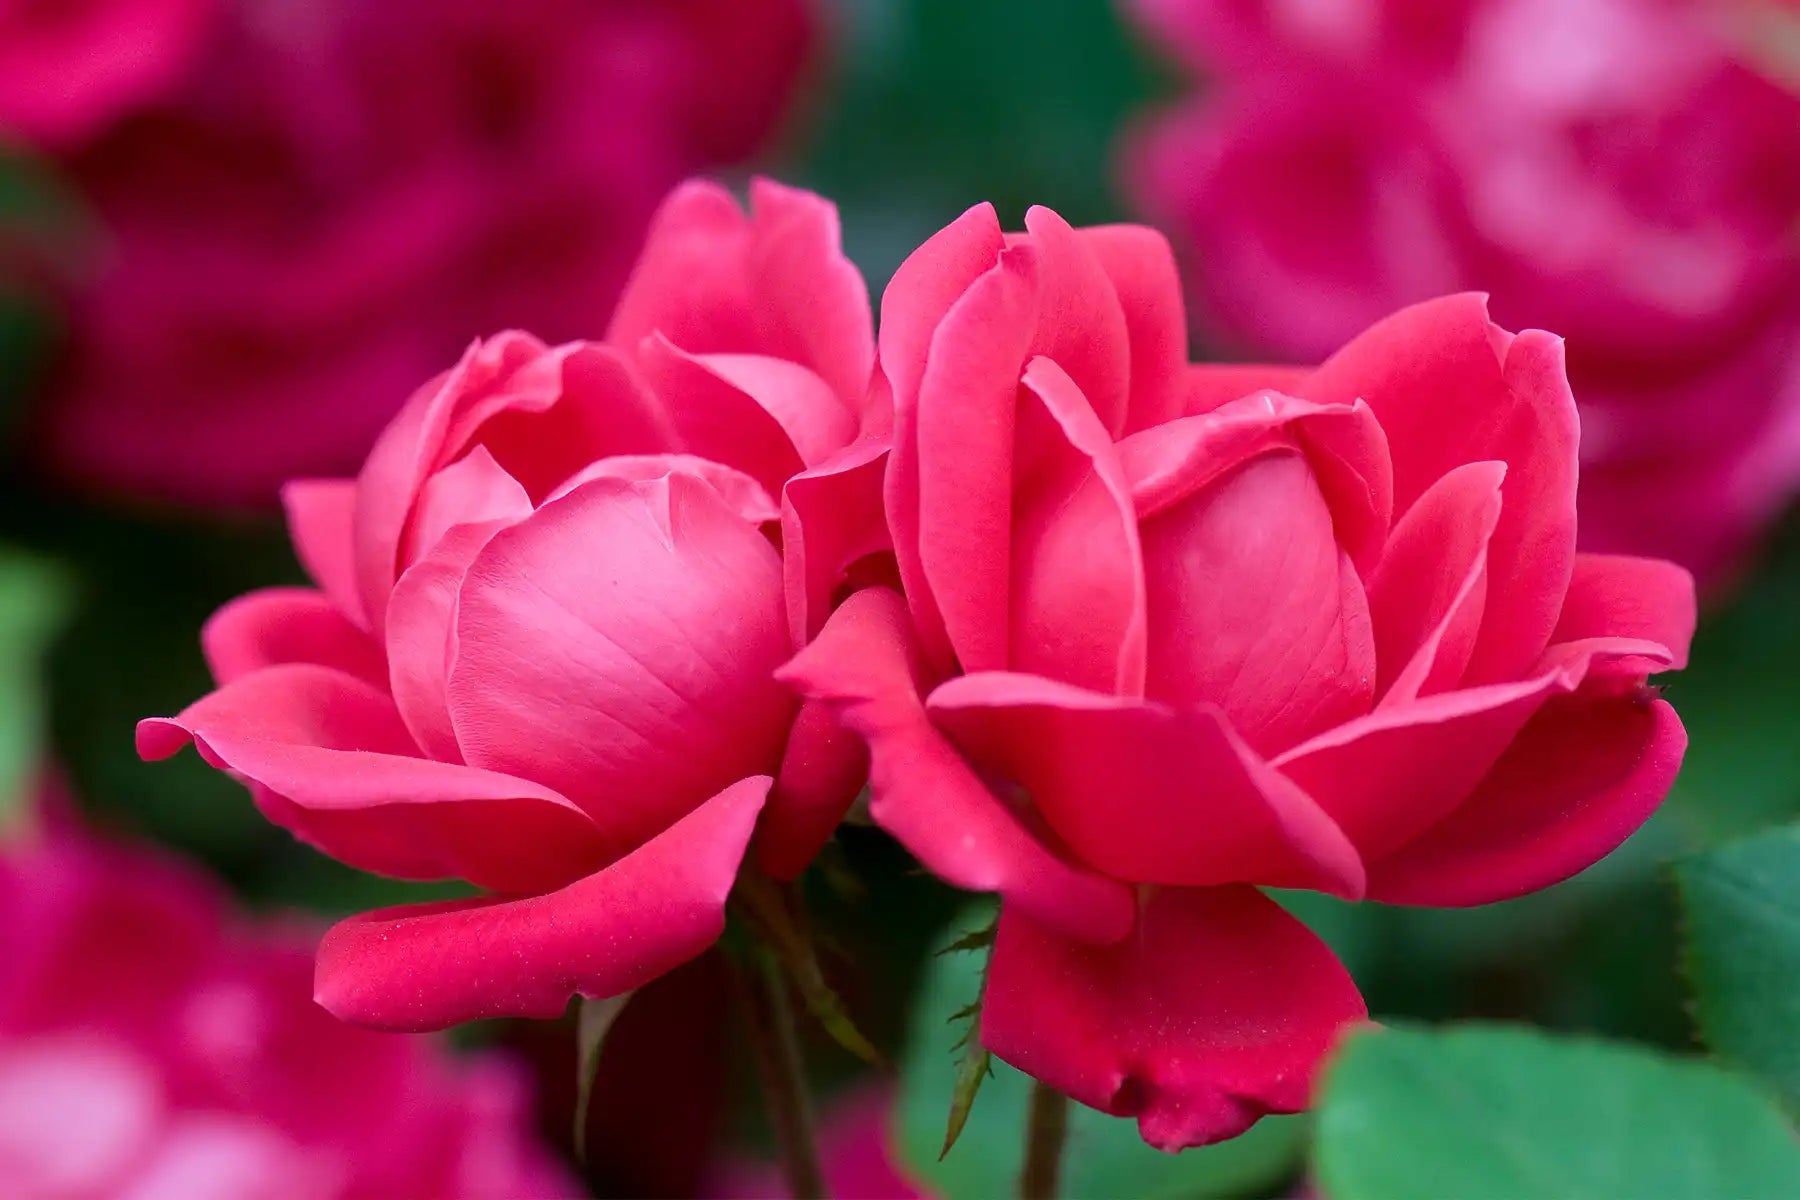 5000 Bi-Color Rose Petals